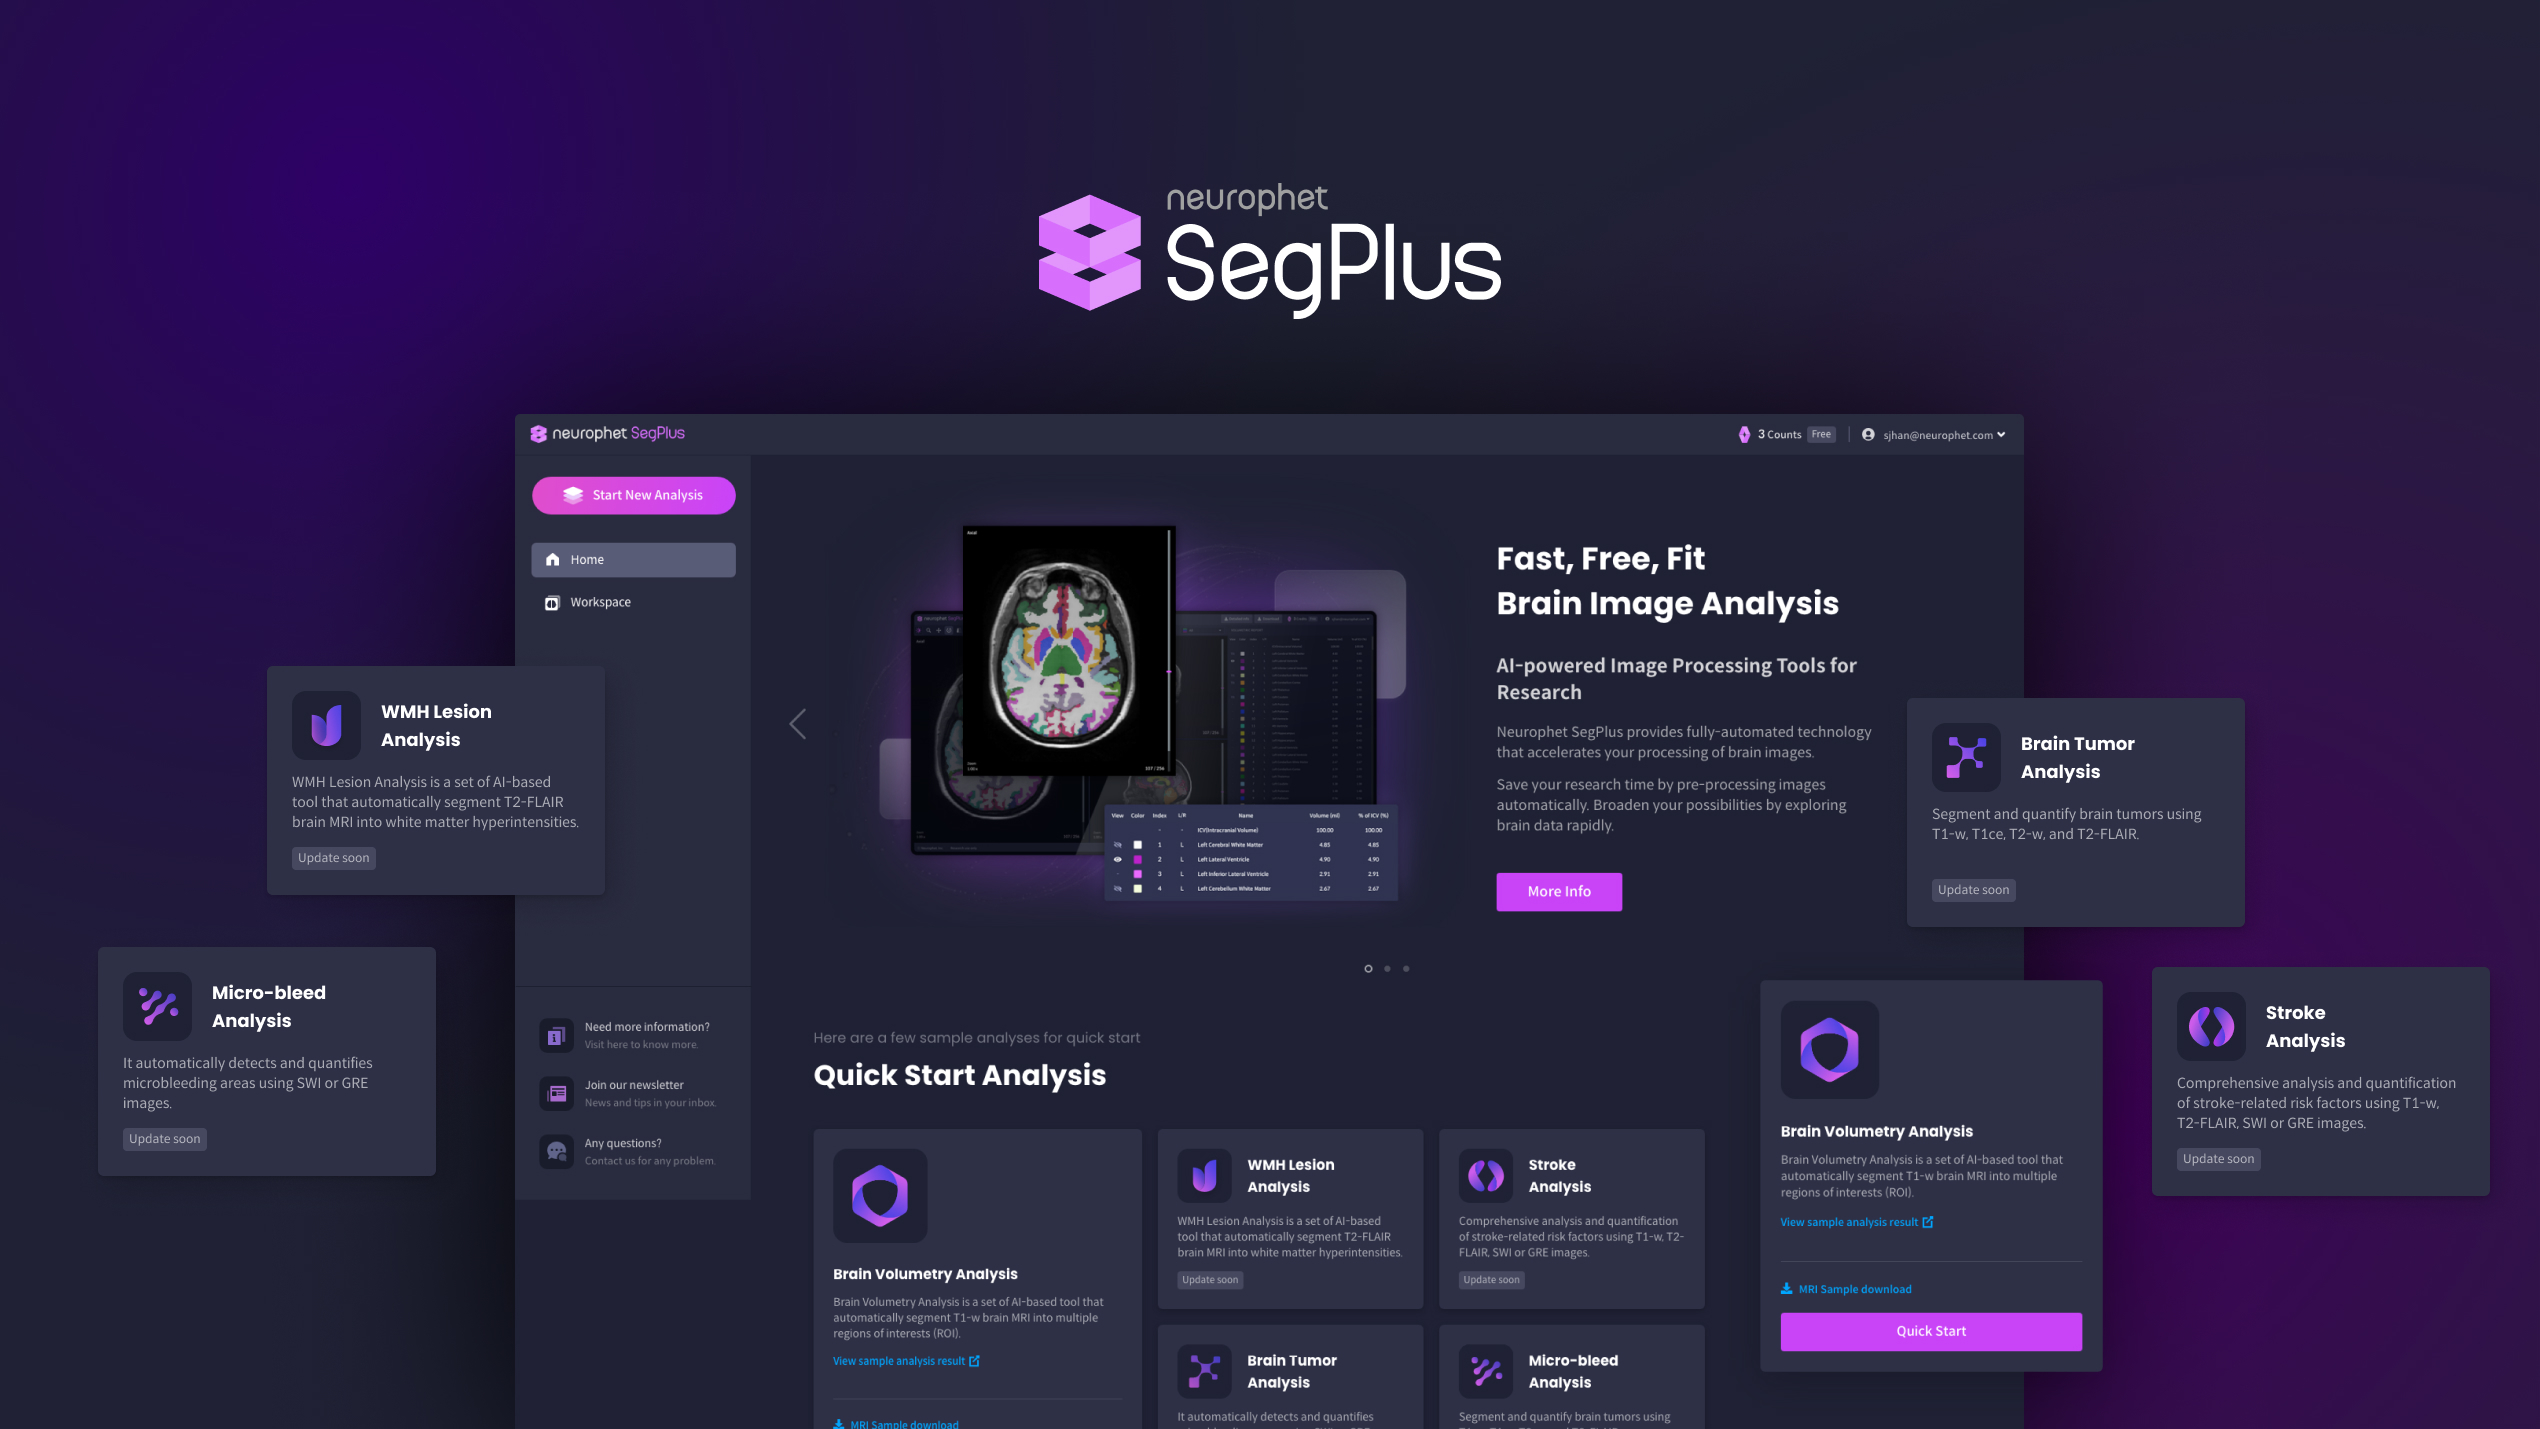 Neurophet SegPlus